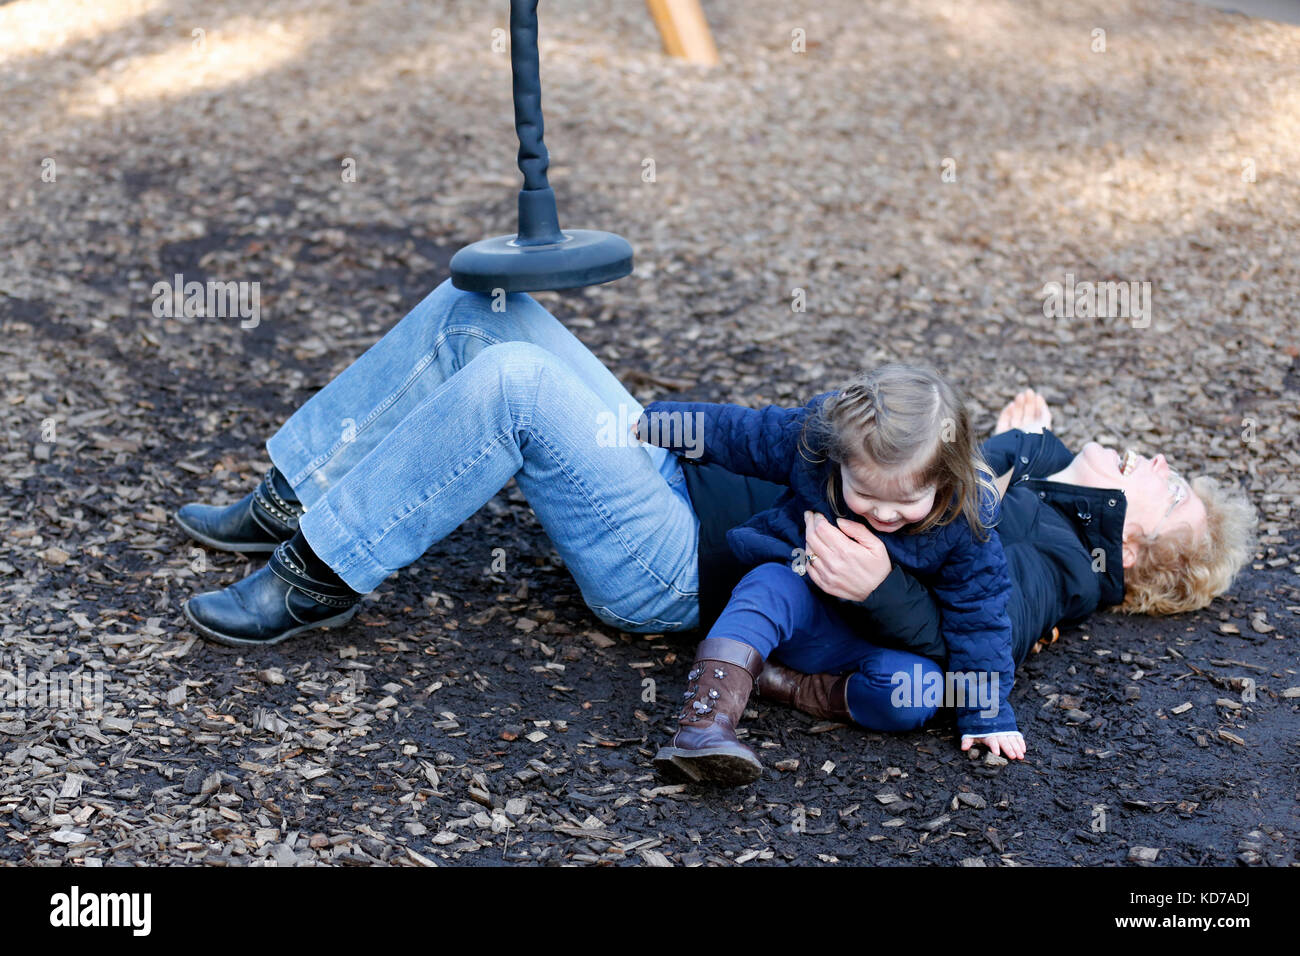 Una donna di mezza età, che rideva ad alta voce, mentre era sdraiata a terra dopo essere caduta dall'apparato da gioco che aveva usato con suo nipote Foto Stock